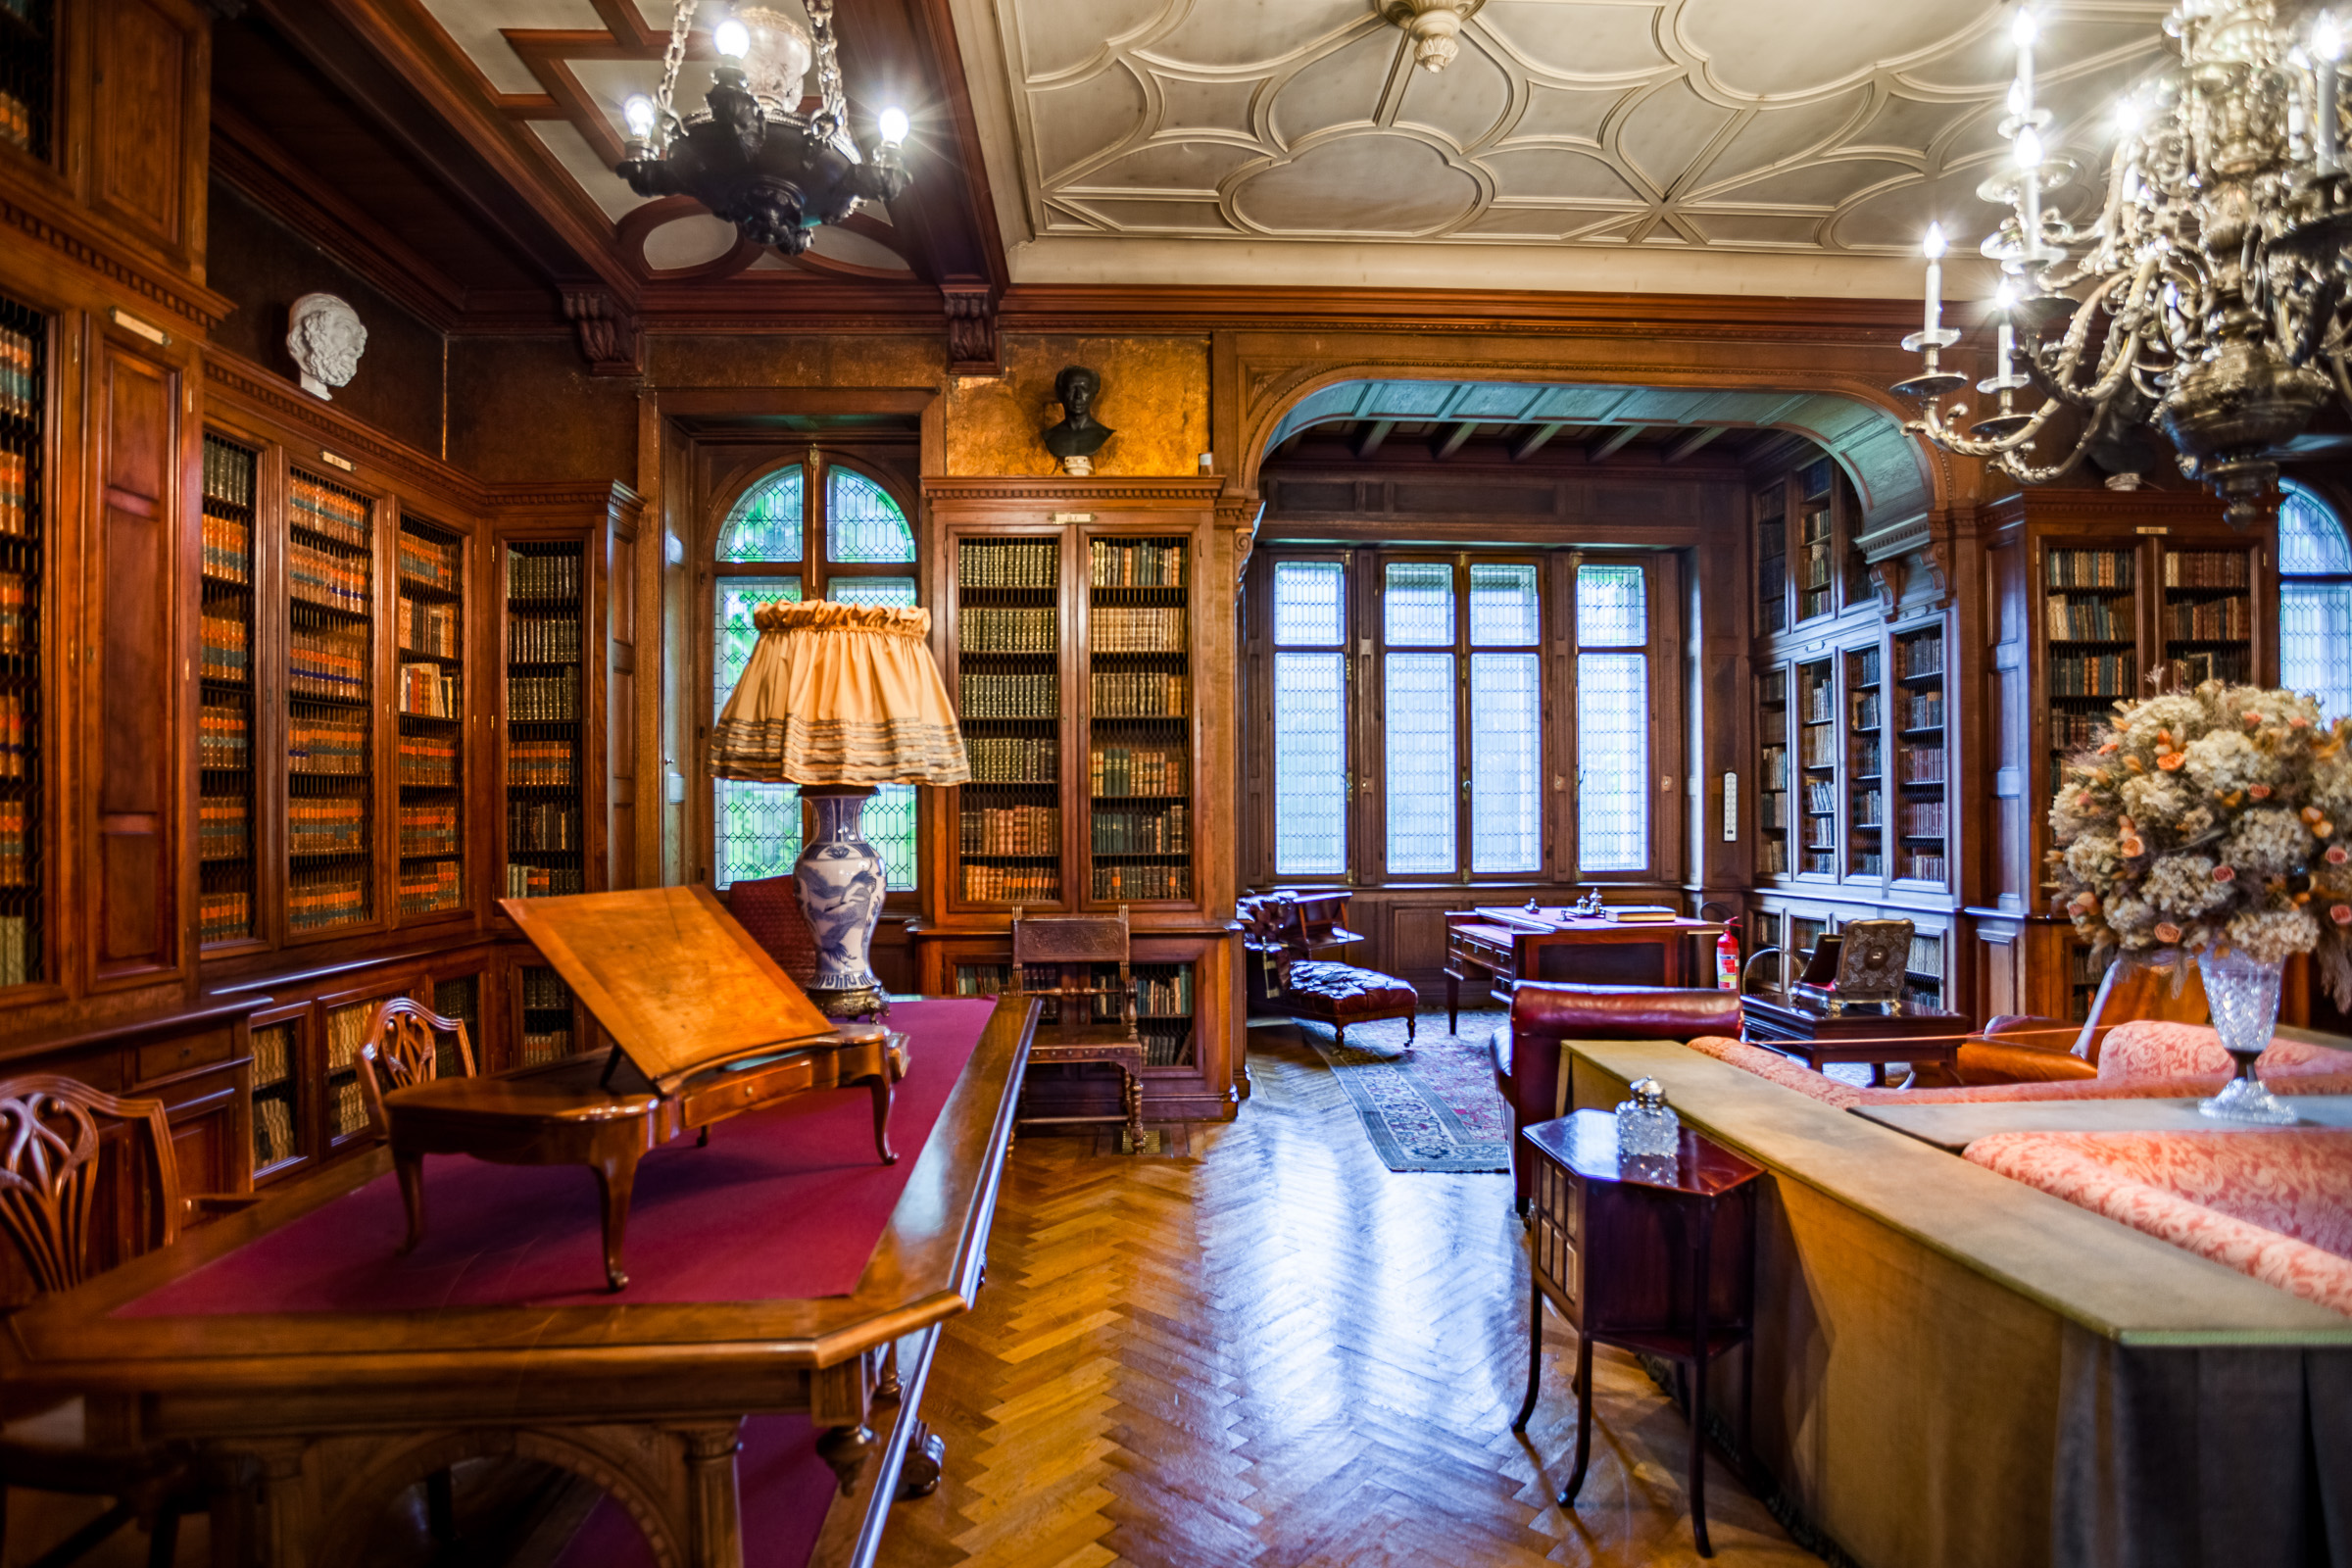 Eleganckie wnętrze w stylu angielskim. Na środuku sofa i skórzane fotele. Przy ścianach drewniane, zdobione regały z książkami. Na suficie zawieszony wielki żyrandol.